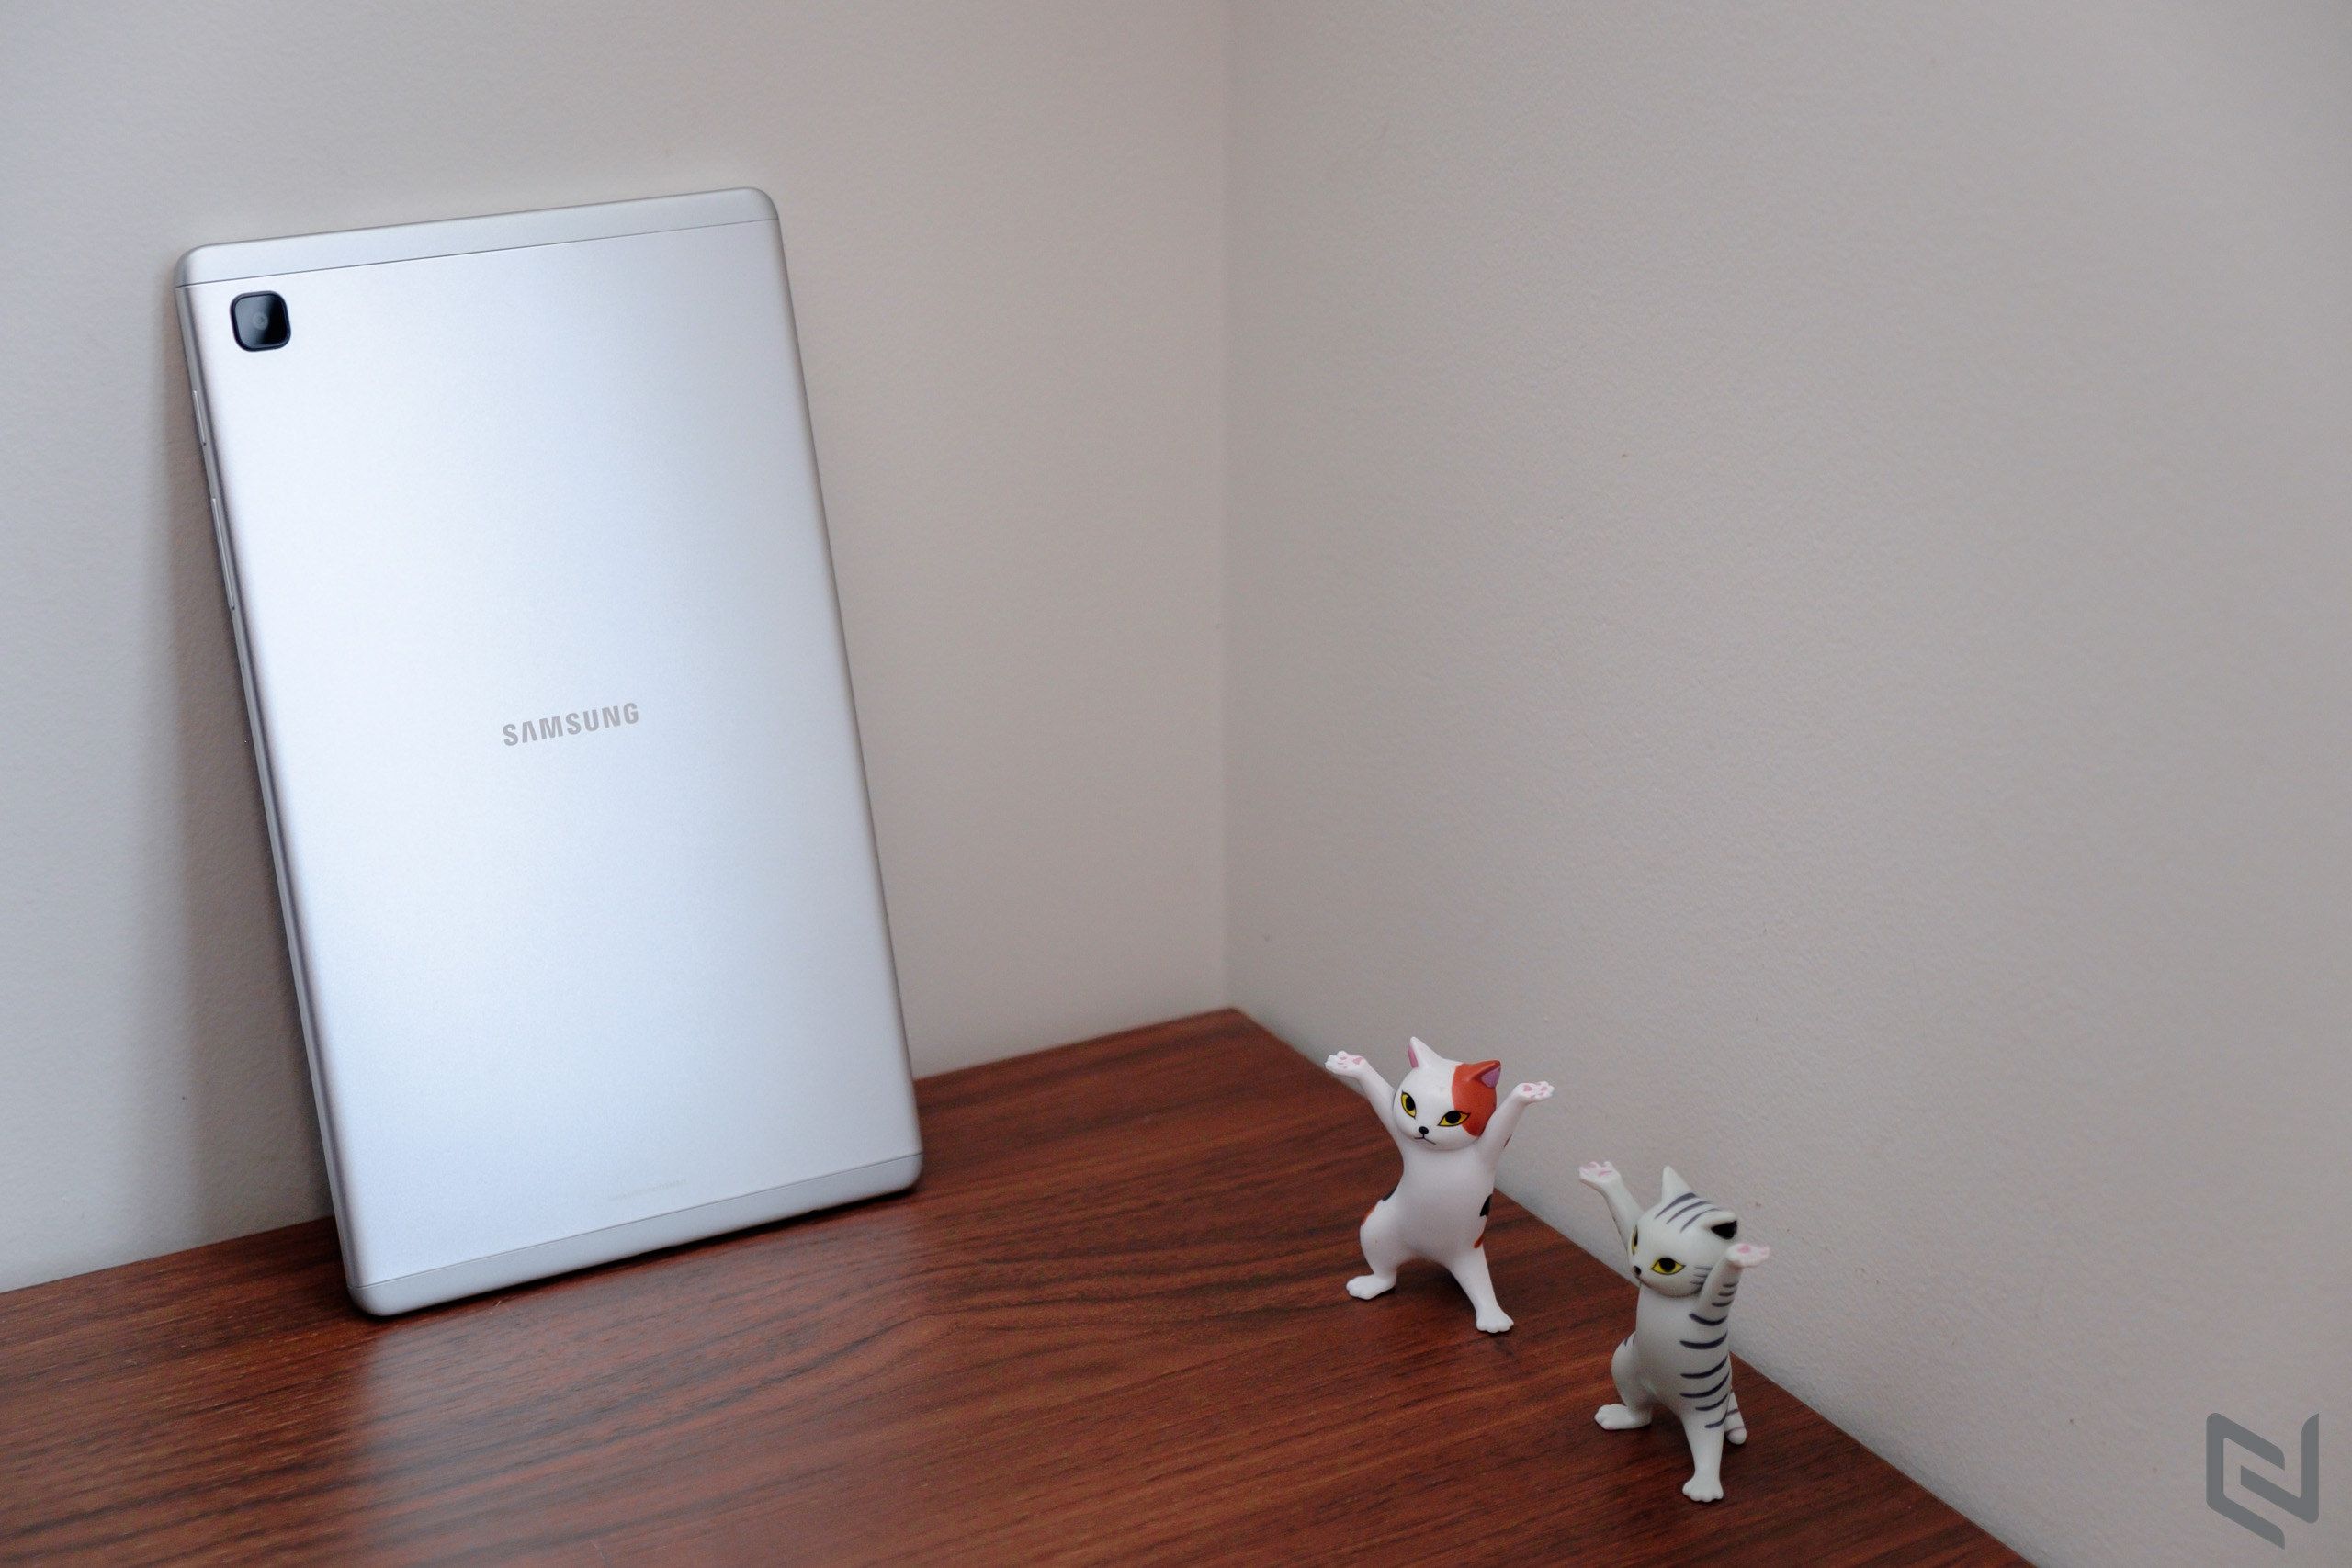 Galaxy Tab A7 Lite – Chiếc máy tính bảng lý tưởng dành cho học tập và giải trí ở phân khúc phổ thông